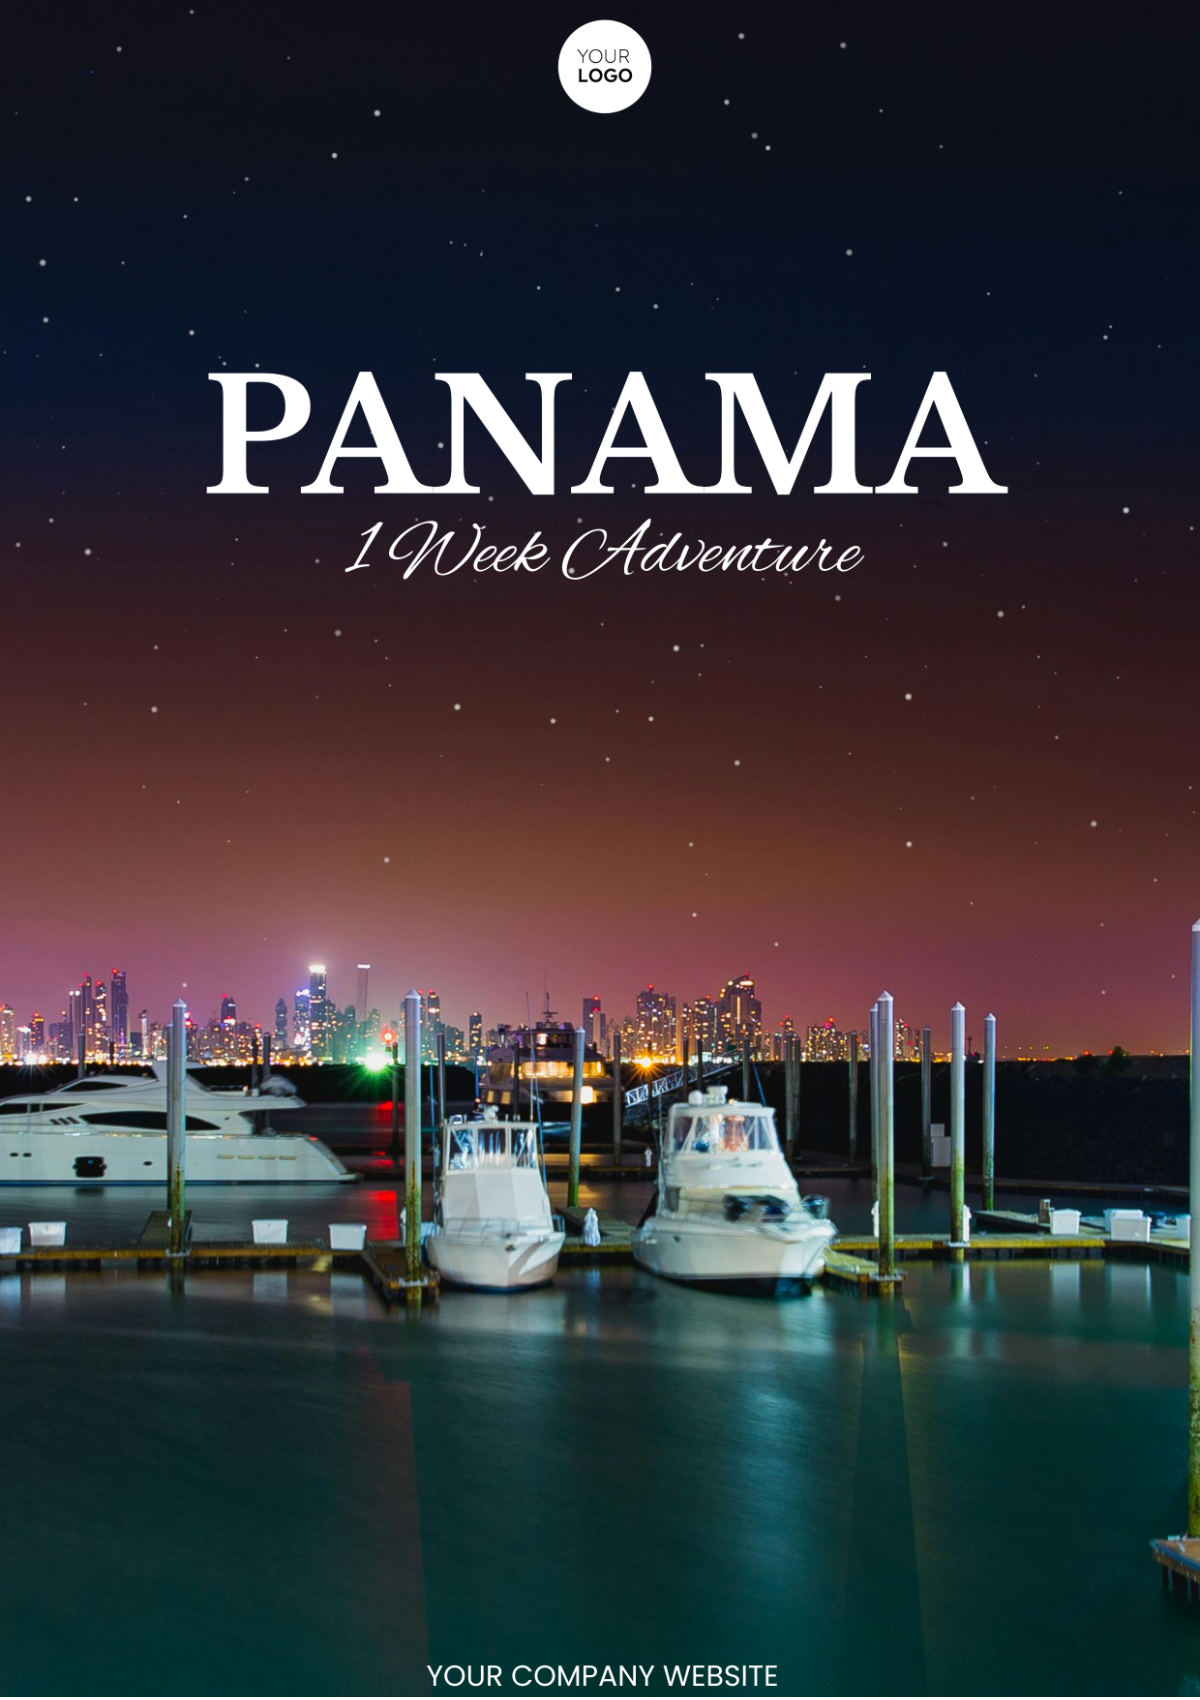 Free 1 Week Panama Itinerary